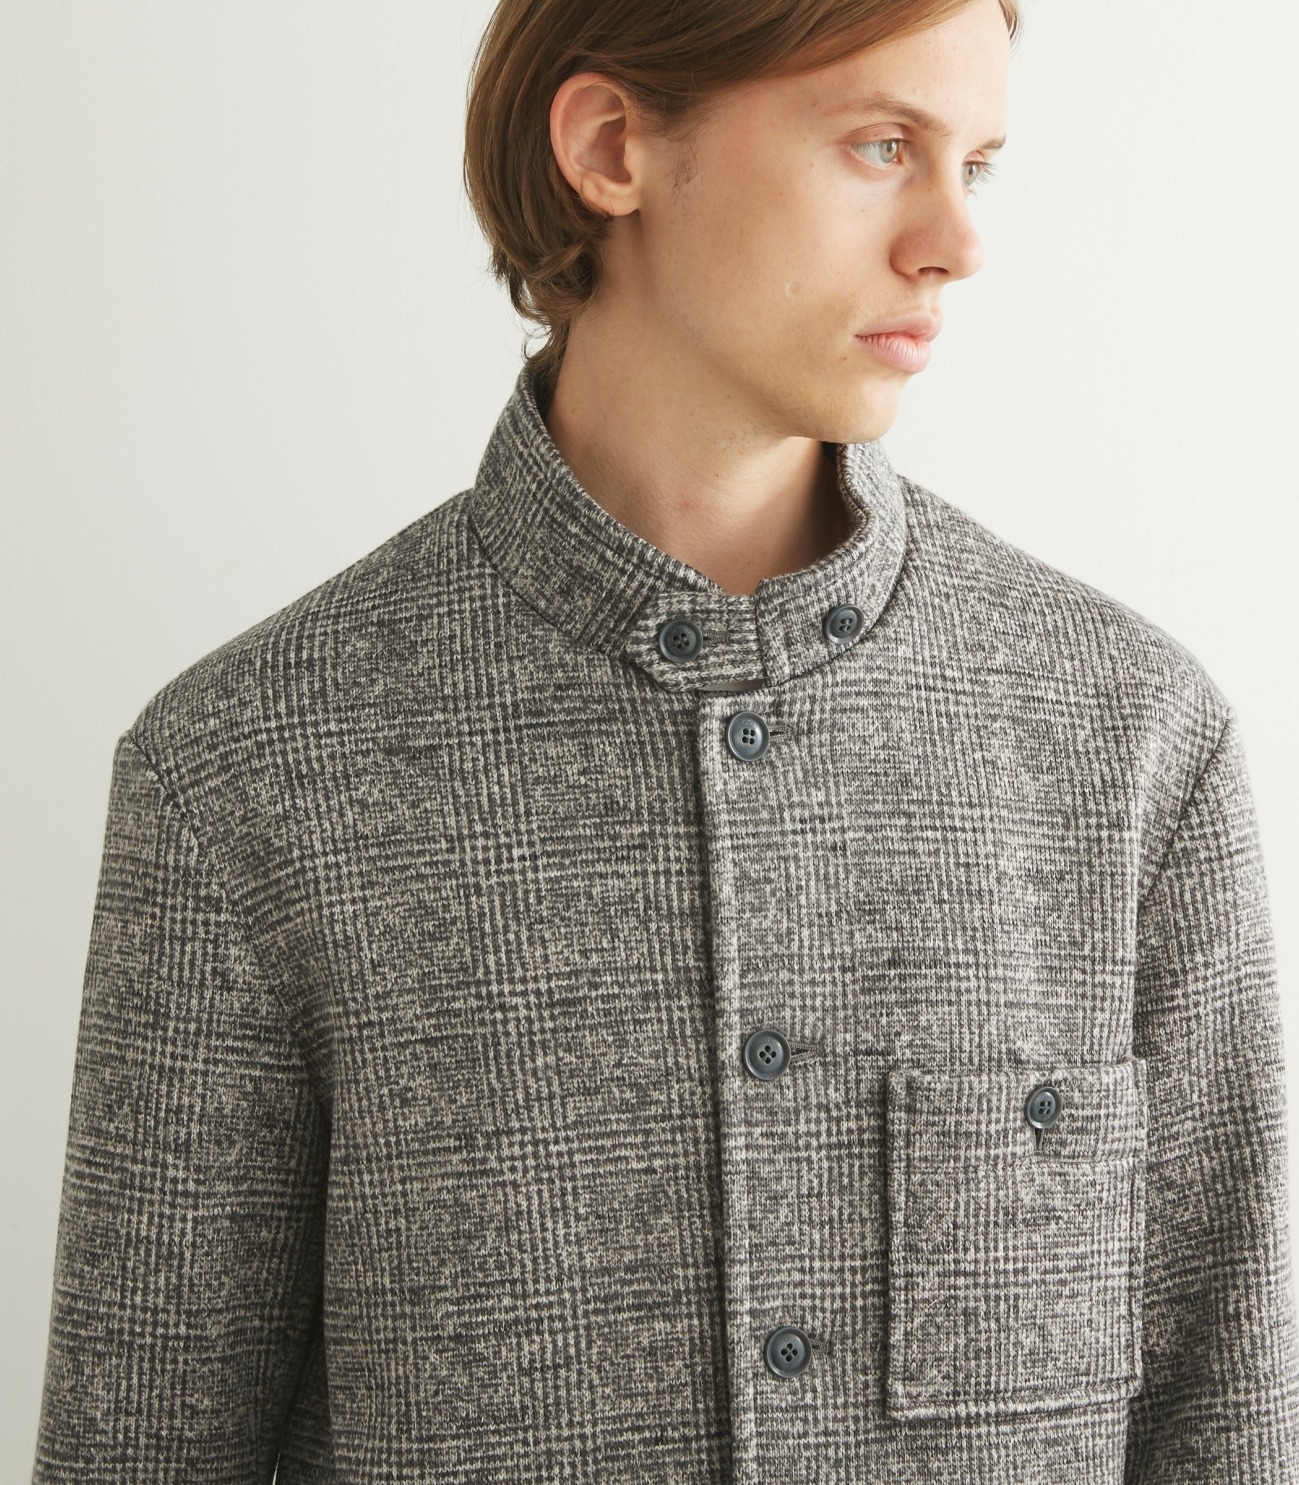 Men's sweater fleece comfort jacket 詳細画像 grey 7